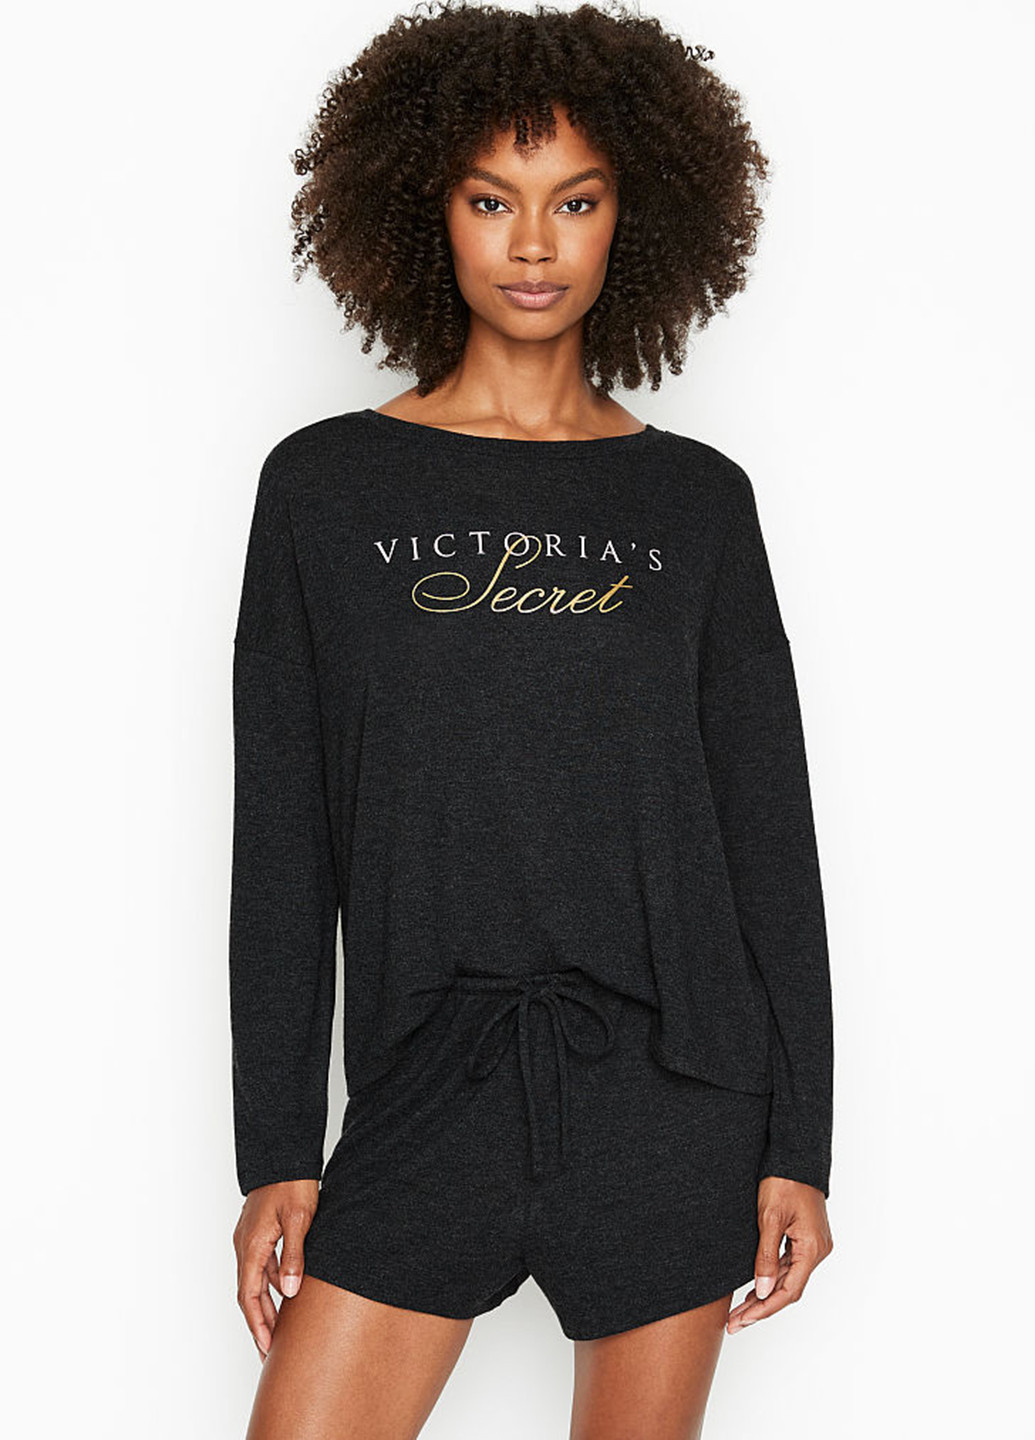 Костюм (лонгслив, шорты) Victoria's Secret логотип чёрный домашний полиэстер, трикотаж